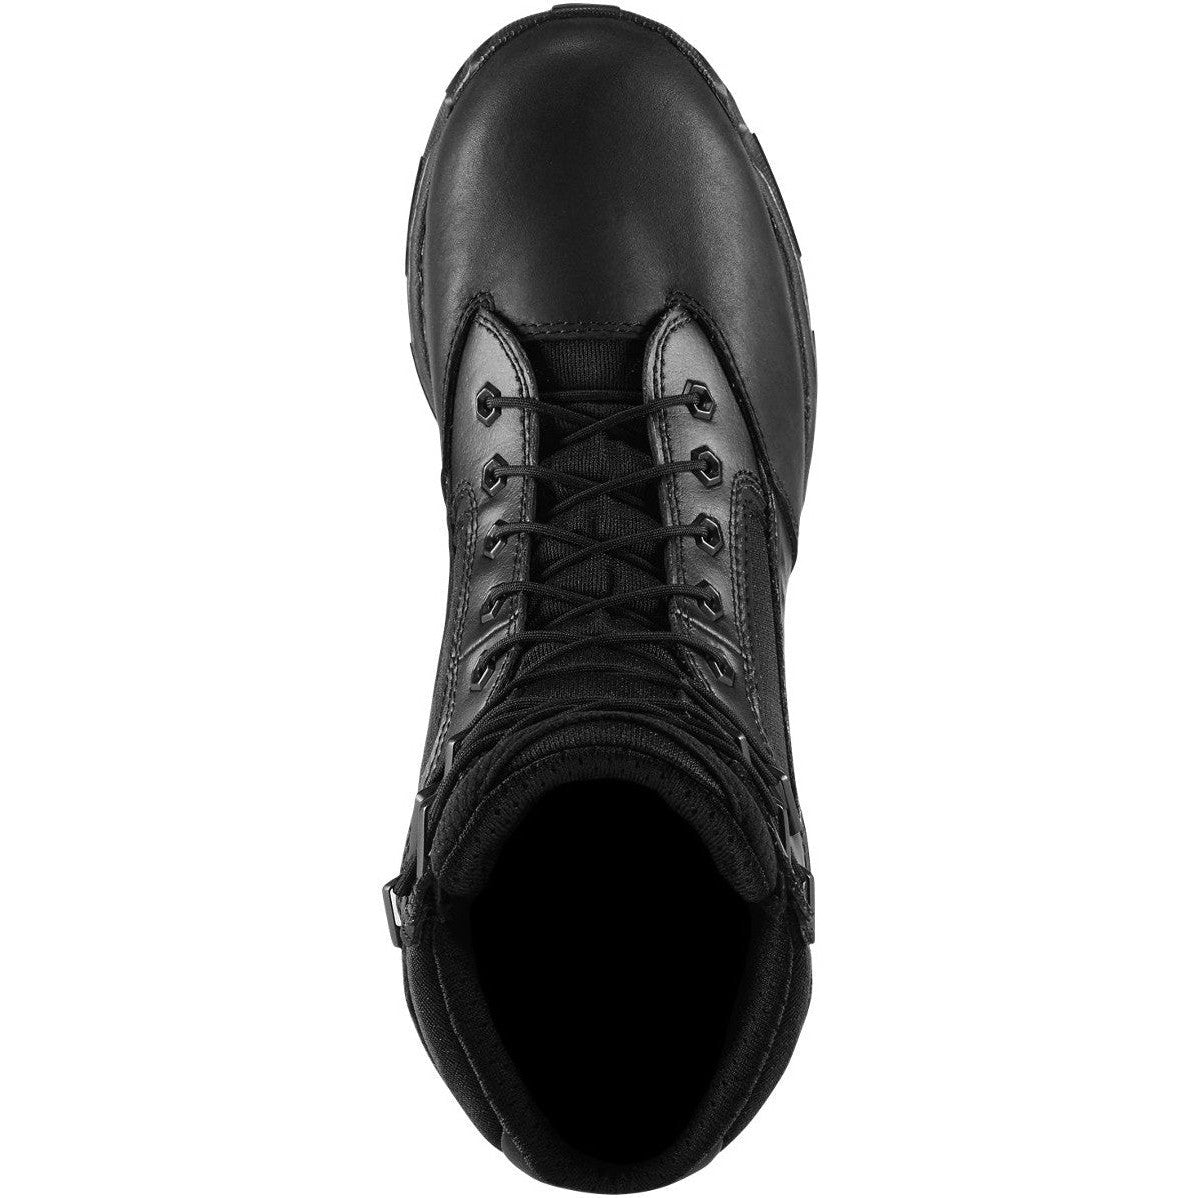 Danner Men's Striker Bolt 8" Waterproof Duty Boot -Black- 26633  - Overlook Boots